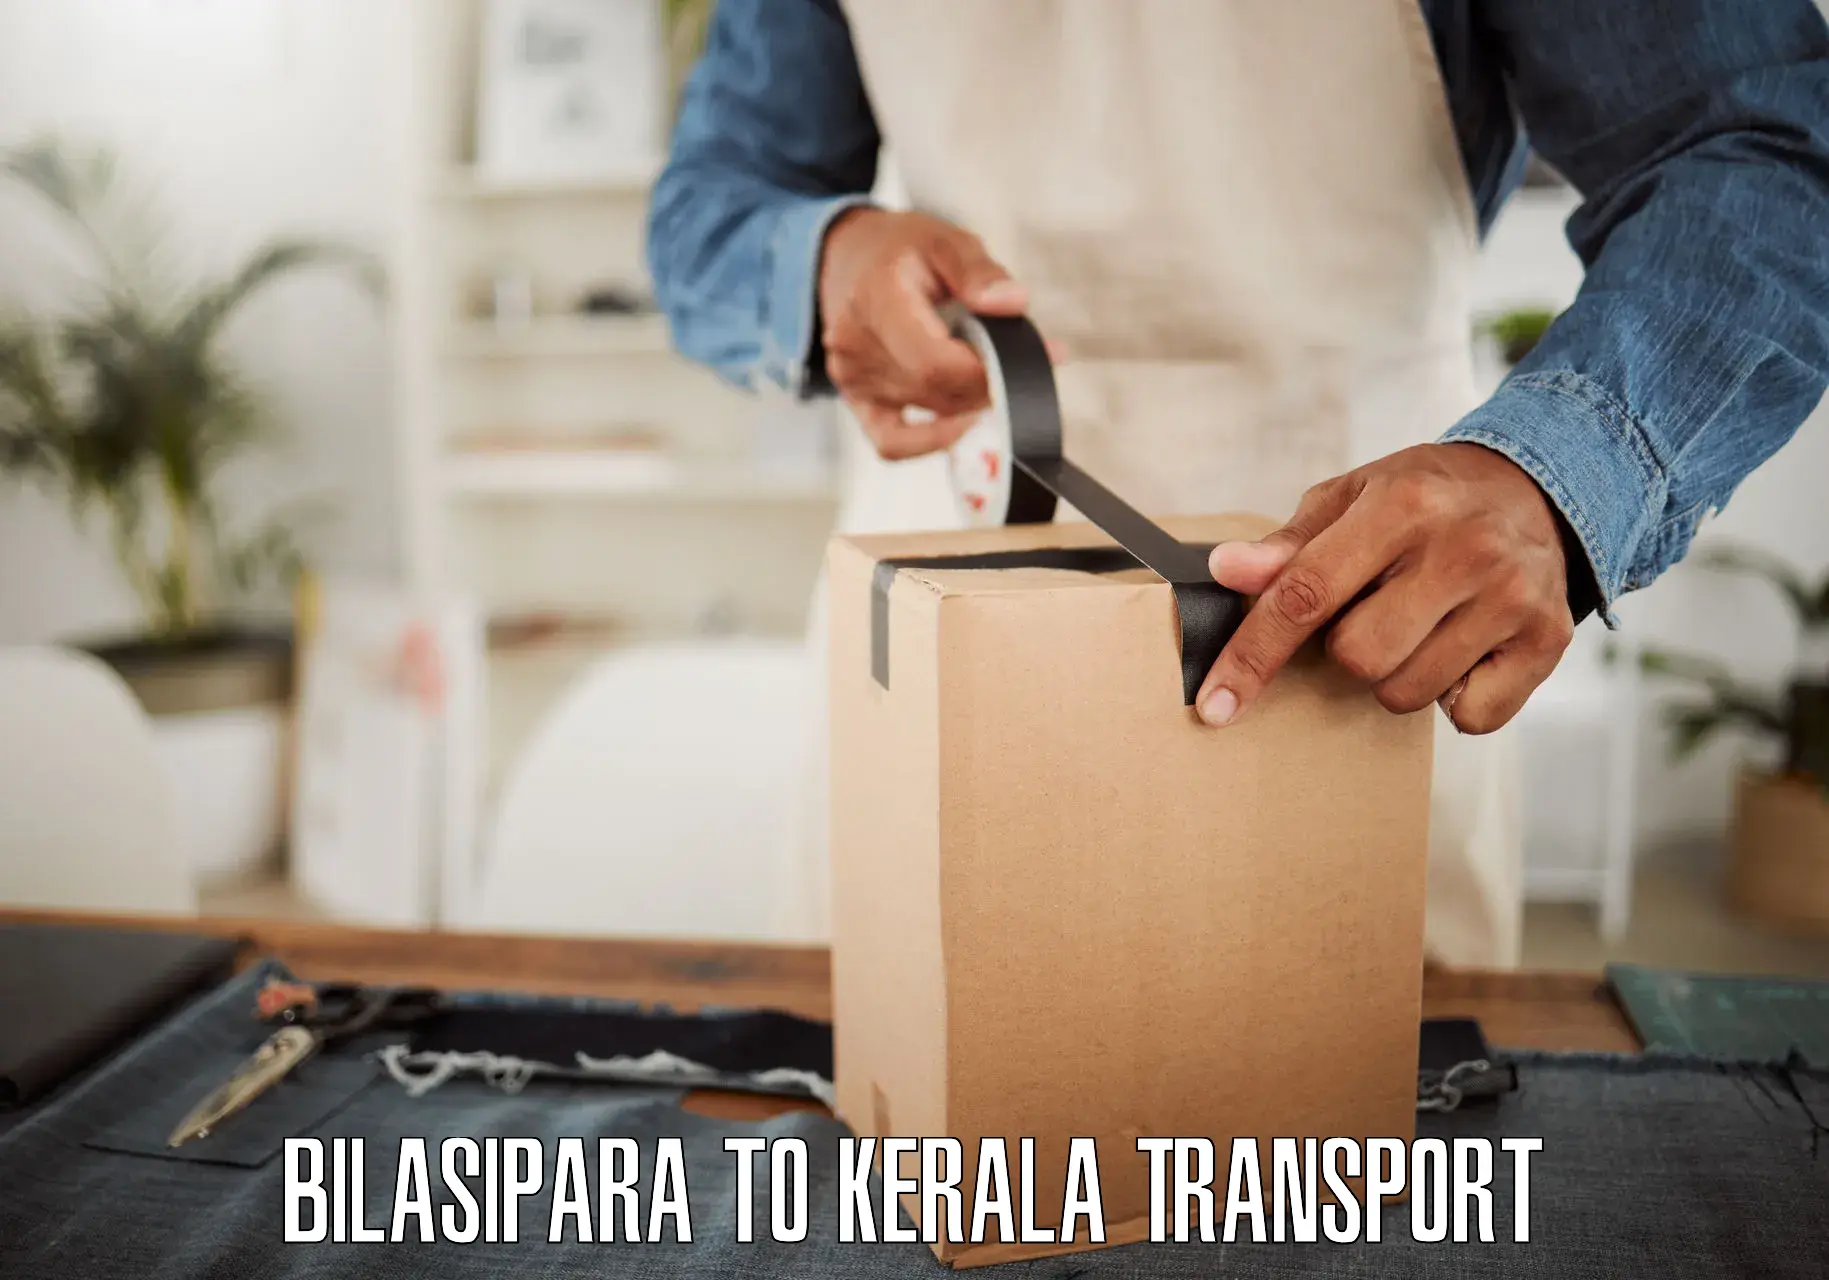 Express transport services Bilasipara to Kunnamkulam